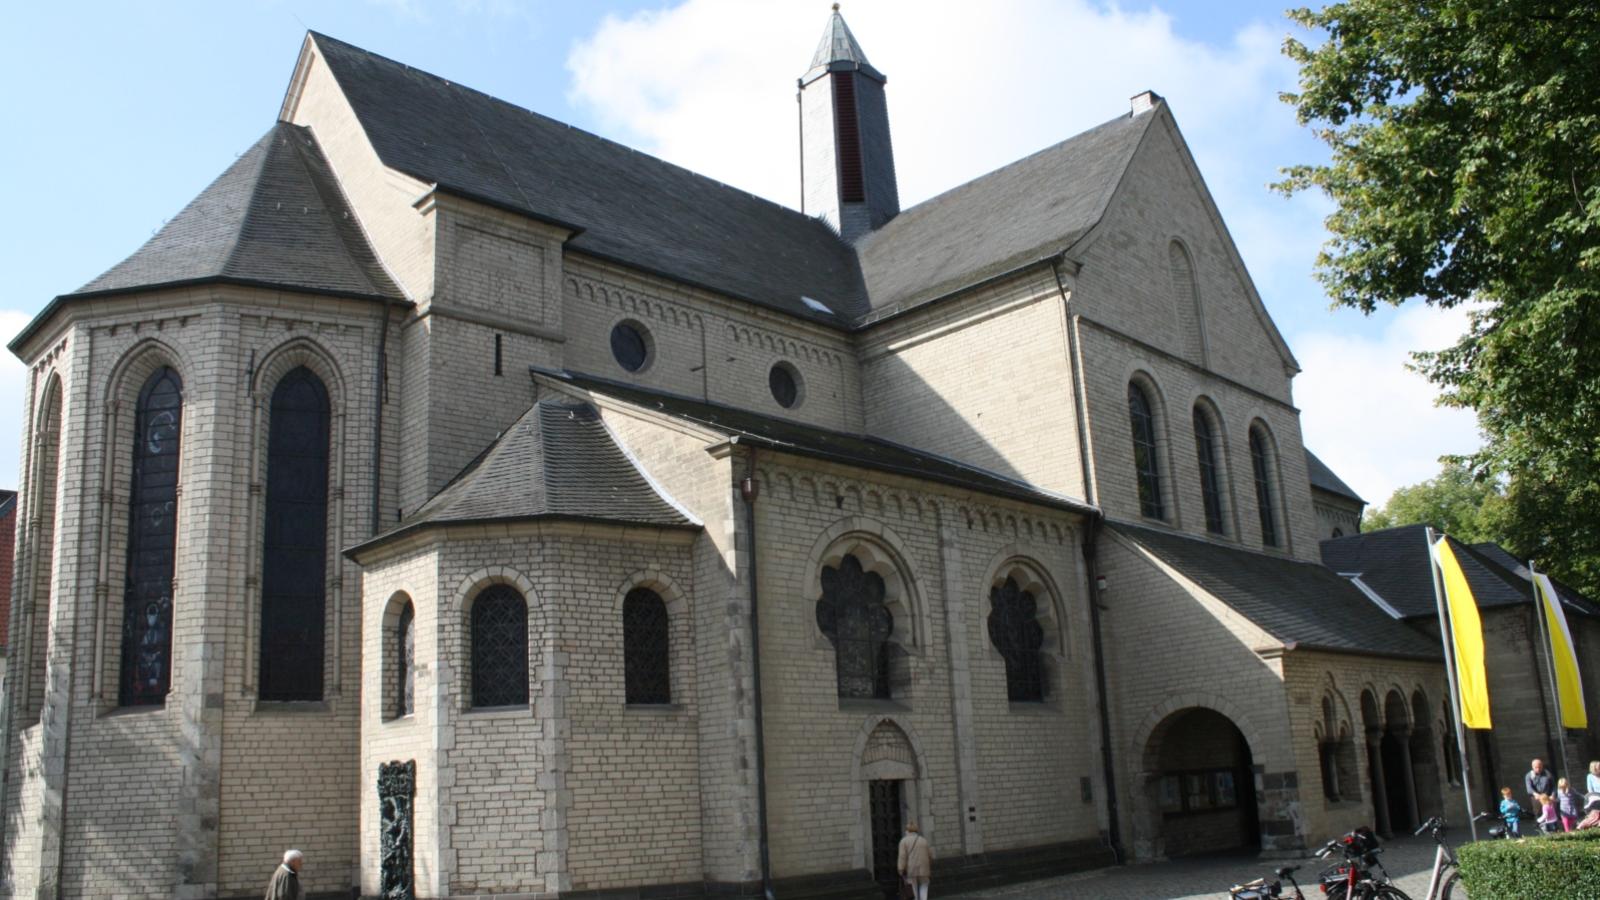 Die ehemalige Stiftskirche St. Suitbertus ist eine flachgedeckte dreischiffige Pfeilerbasilika im Düsseldorfer Stadtteil Kaiserswerth. Die Kirche St. Suitbertus war das zweitälteste Mönchskloster in der großen Erzdiözese Köln.  Papst Paul VI. verlieh St. Suitbertus im Jahr 1967 als erste Kirche in Düsseldorf den Ehrentitel Basilica minor. Ex-Bild-DB-ID: 3226